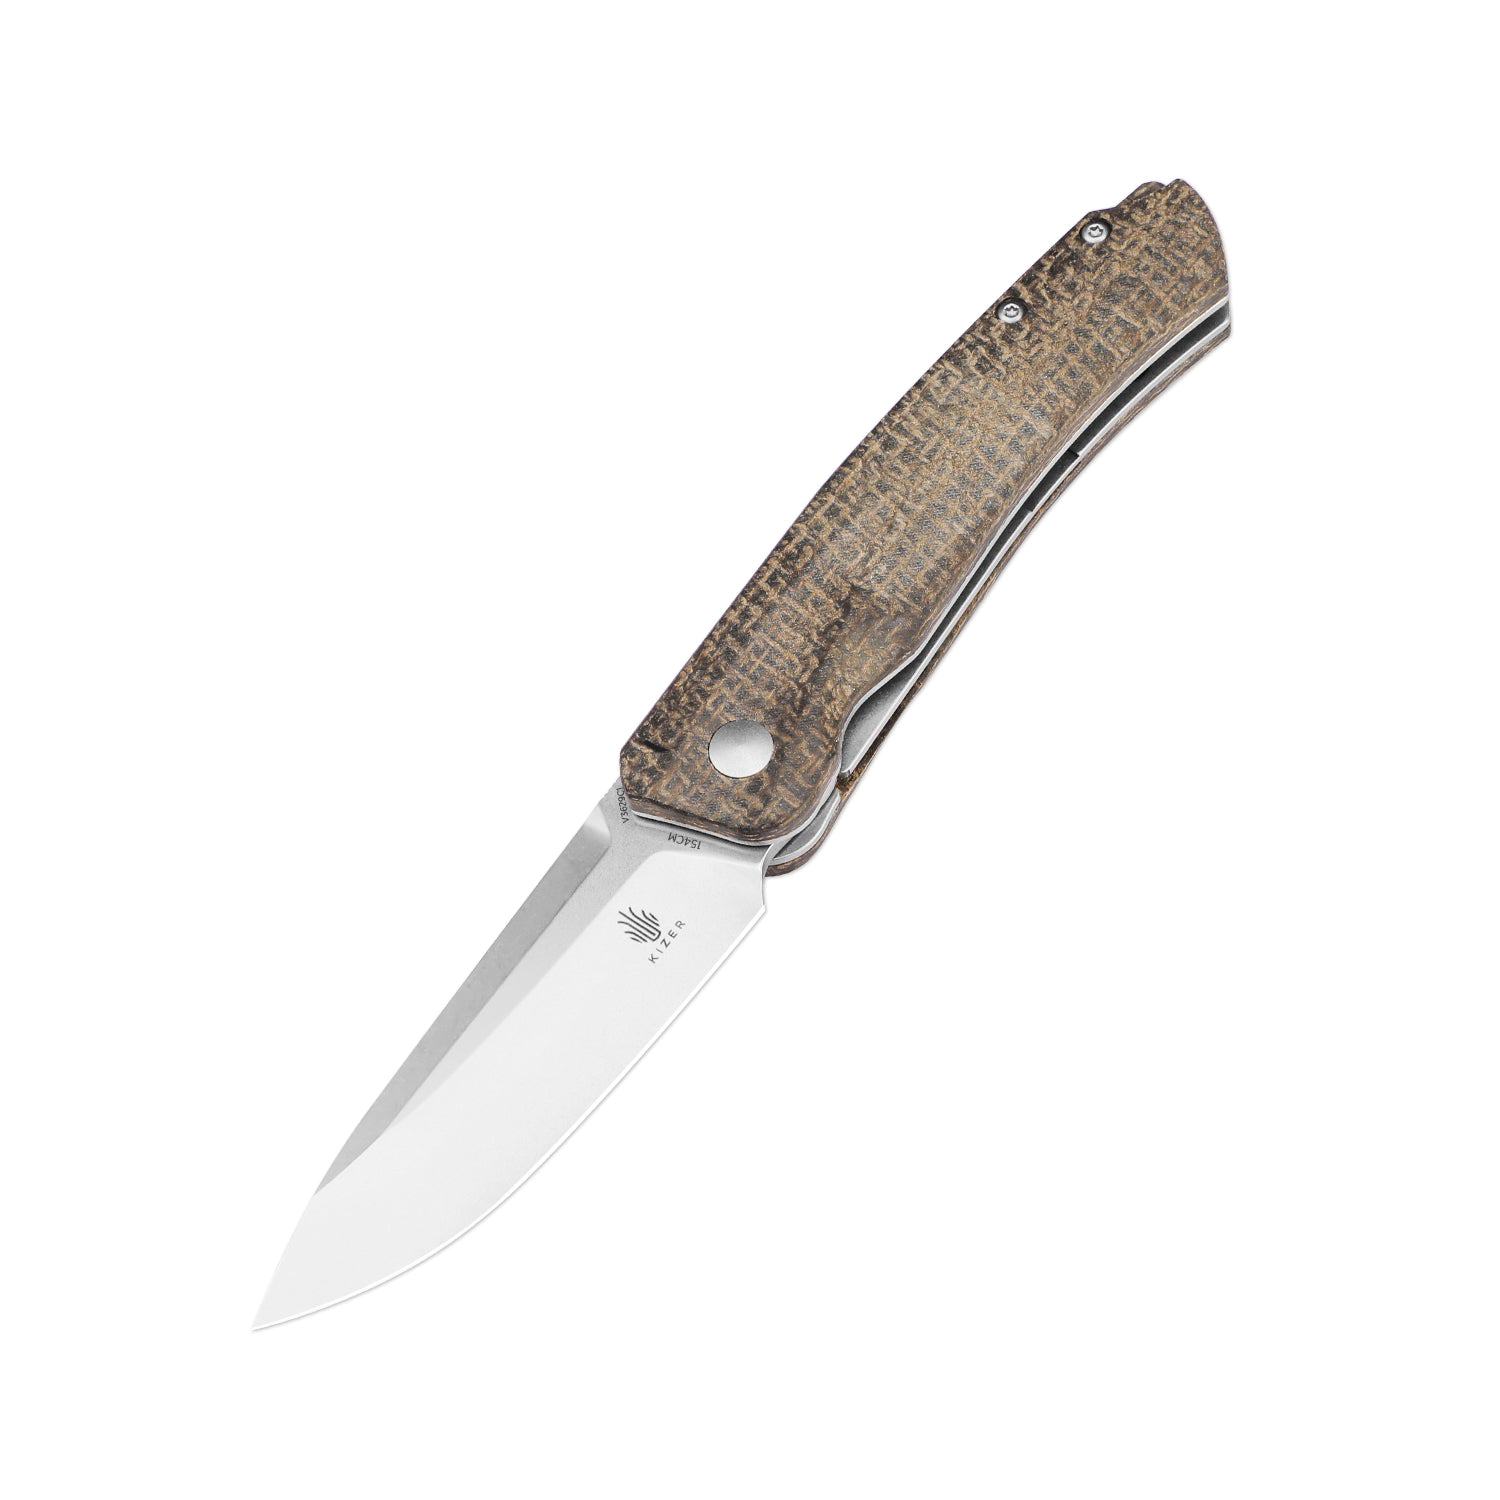 product image for Kizer Aggressor Micarta Handle 154CM V3629C1 Folding Pocket Knife